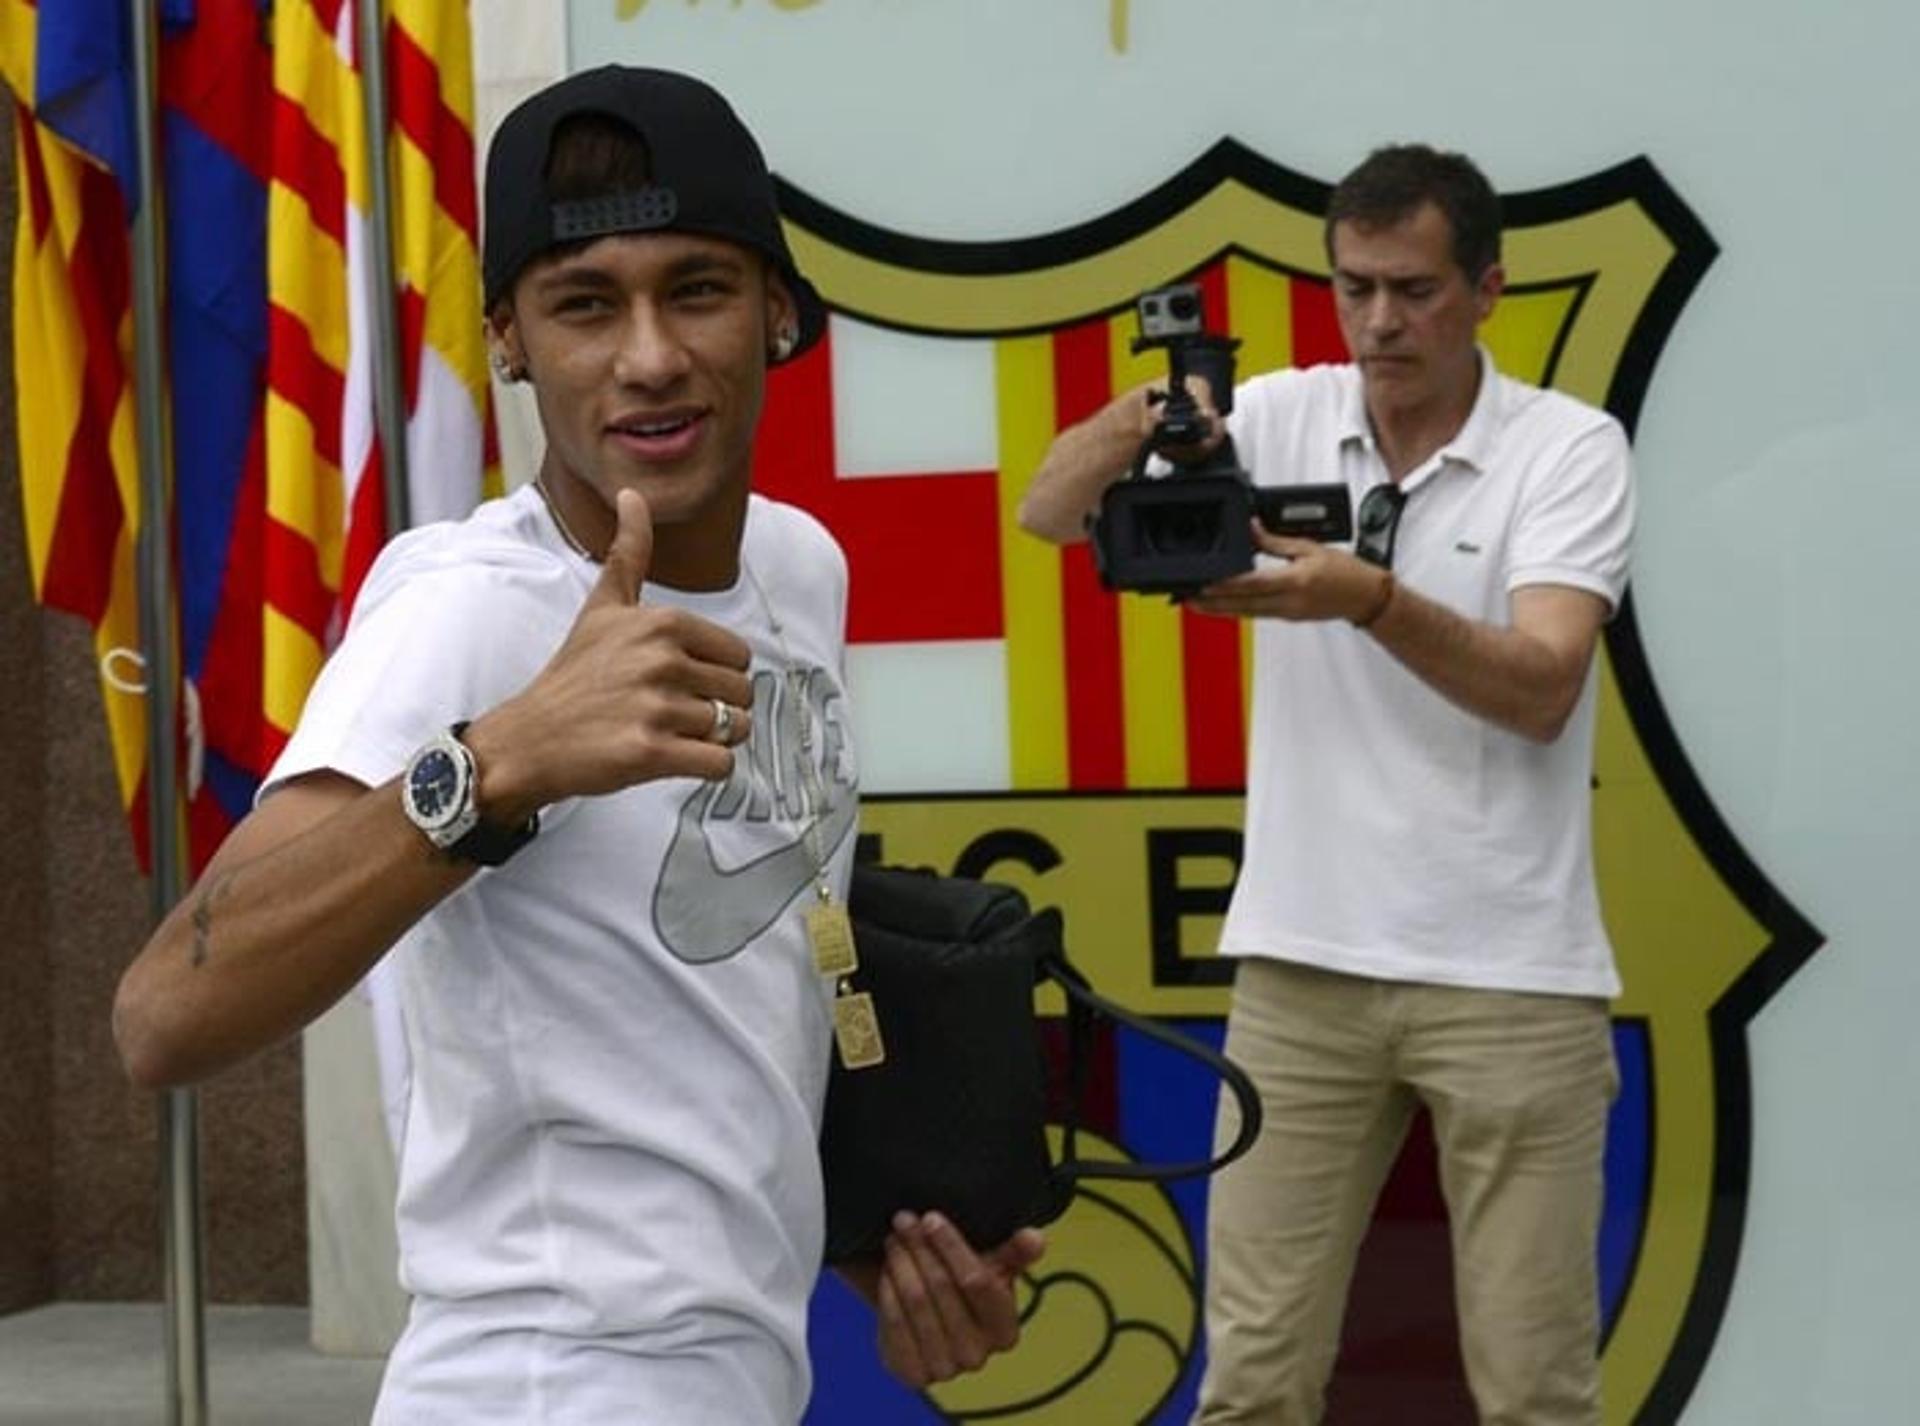 Neymar chegou ao Barcelona em maio de 2013 em uma transferência polêmica. O valor inicial de 57 milhões de euros, que foi divulgado, rende dor de cabeça para as partes até hoje, pois já se sabe que a mesma superou a barreira de 86 milhões de euros